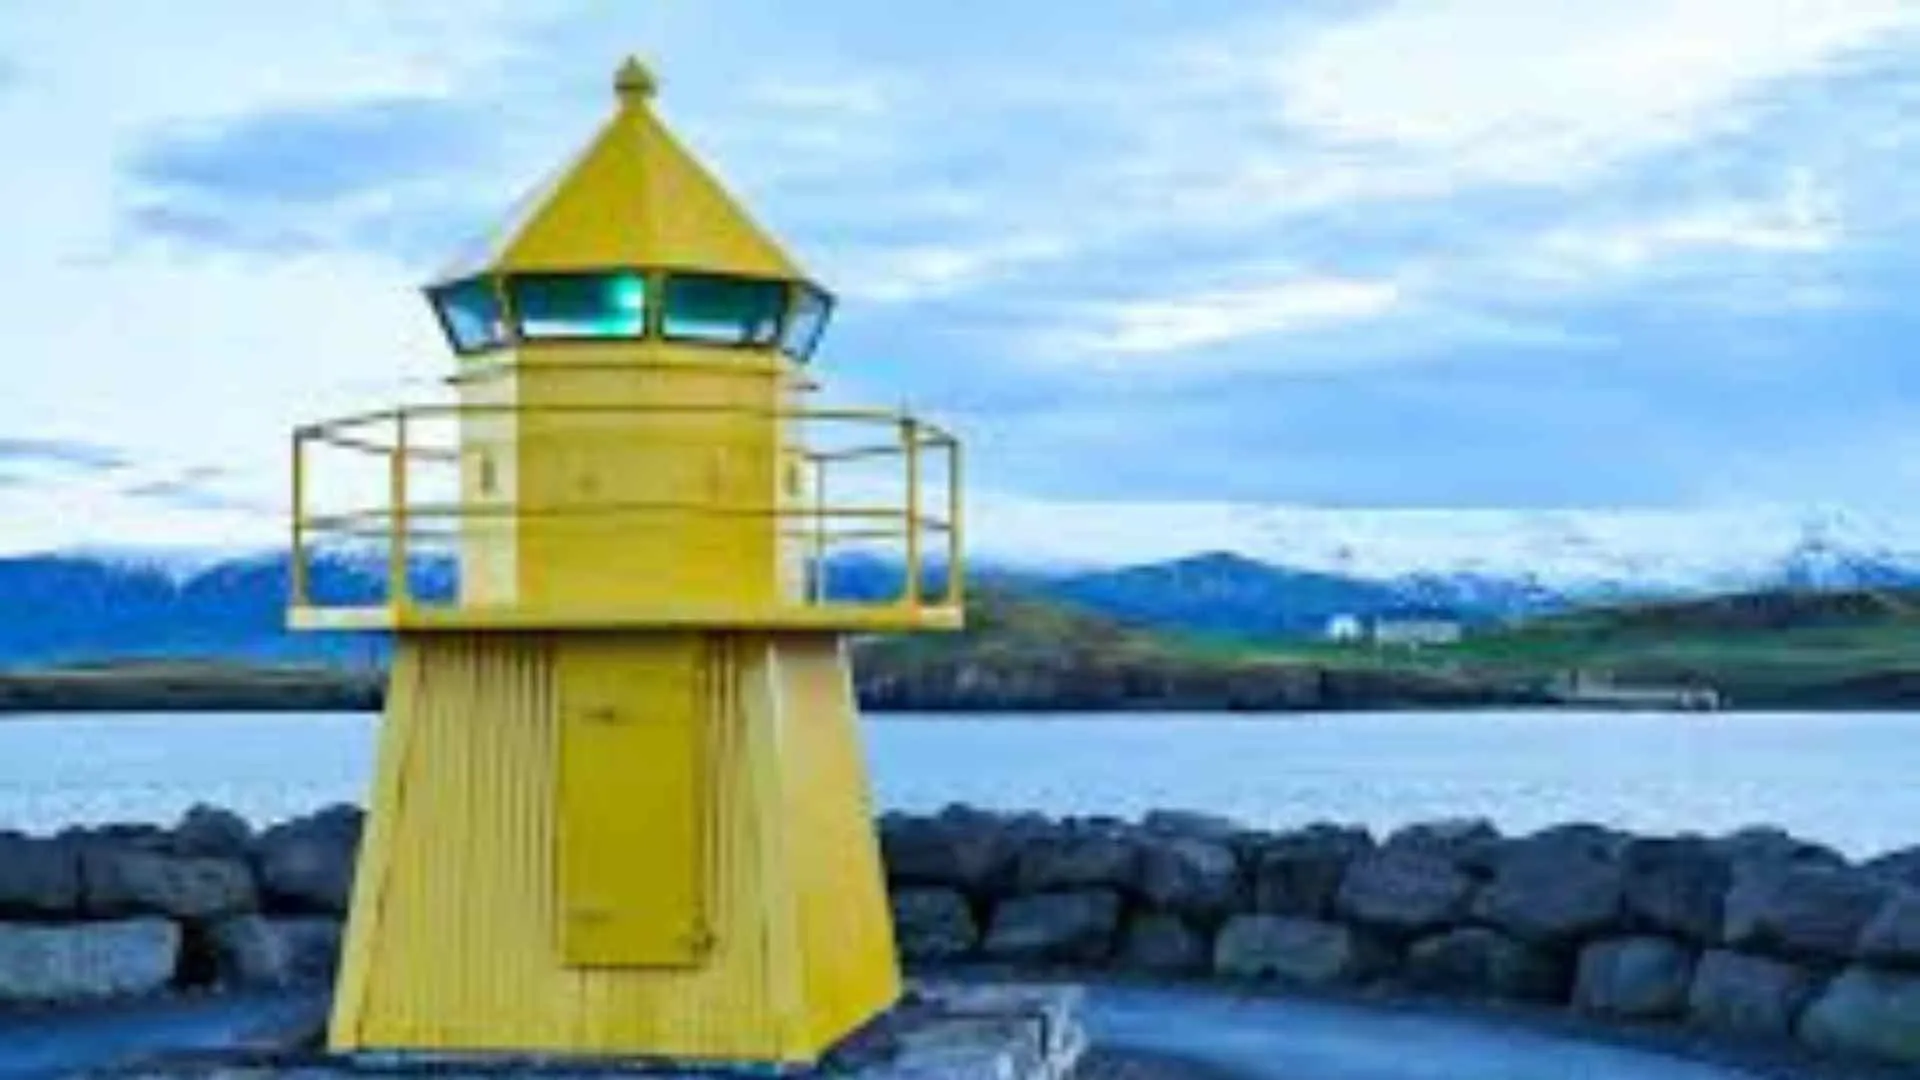 Viðey Island Lighthouse